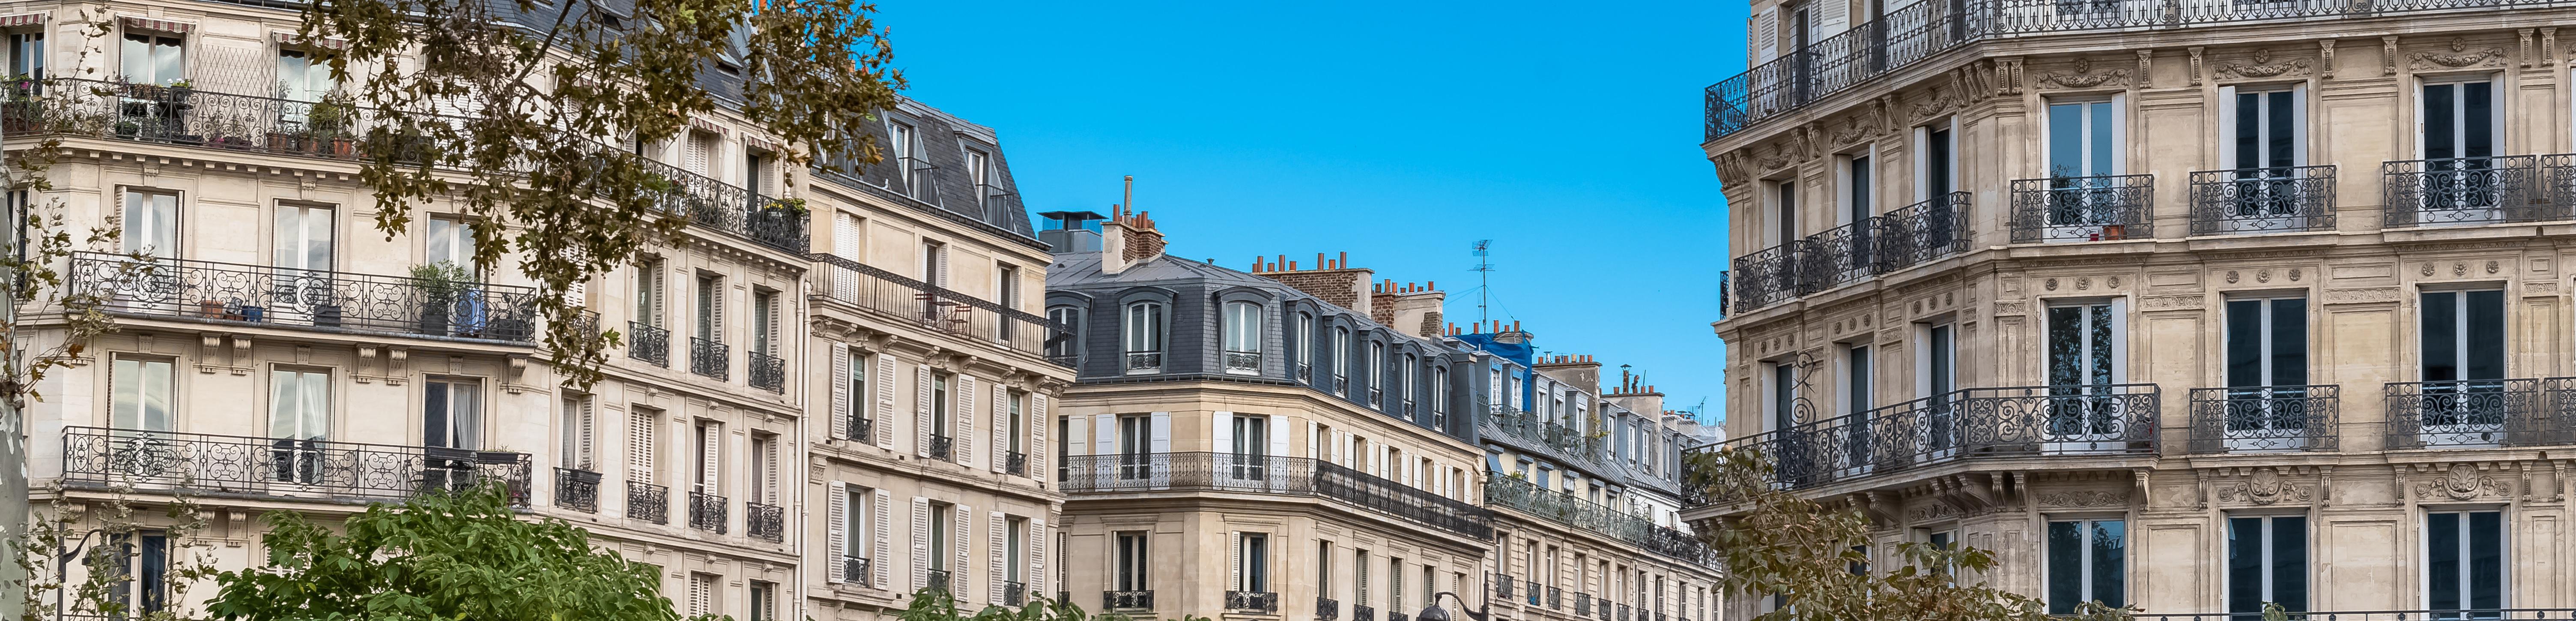 rue- façades immeubles parisiens